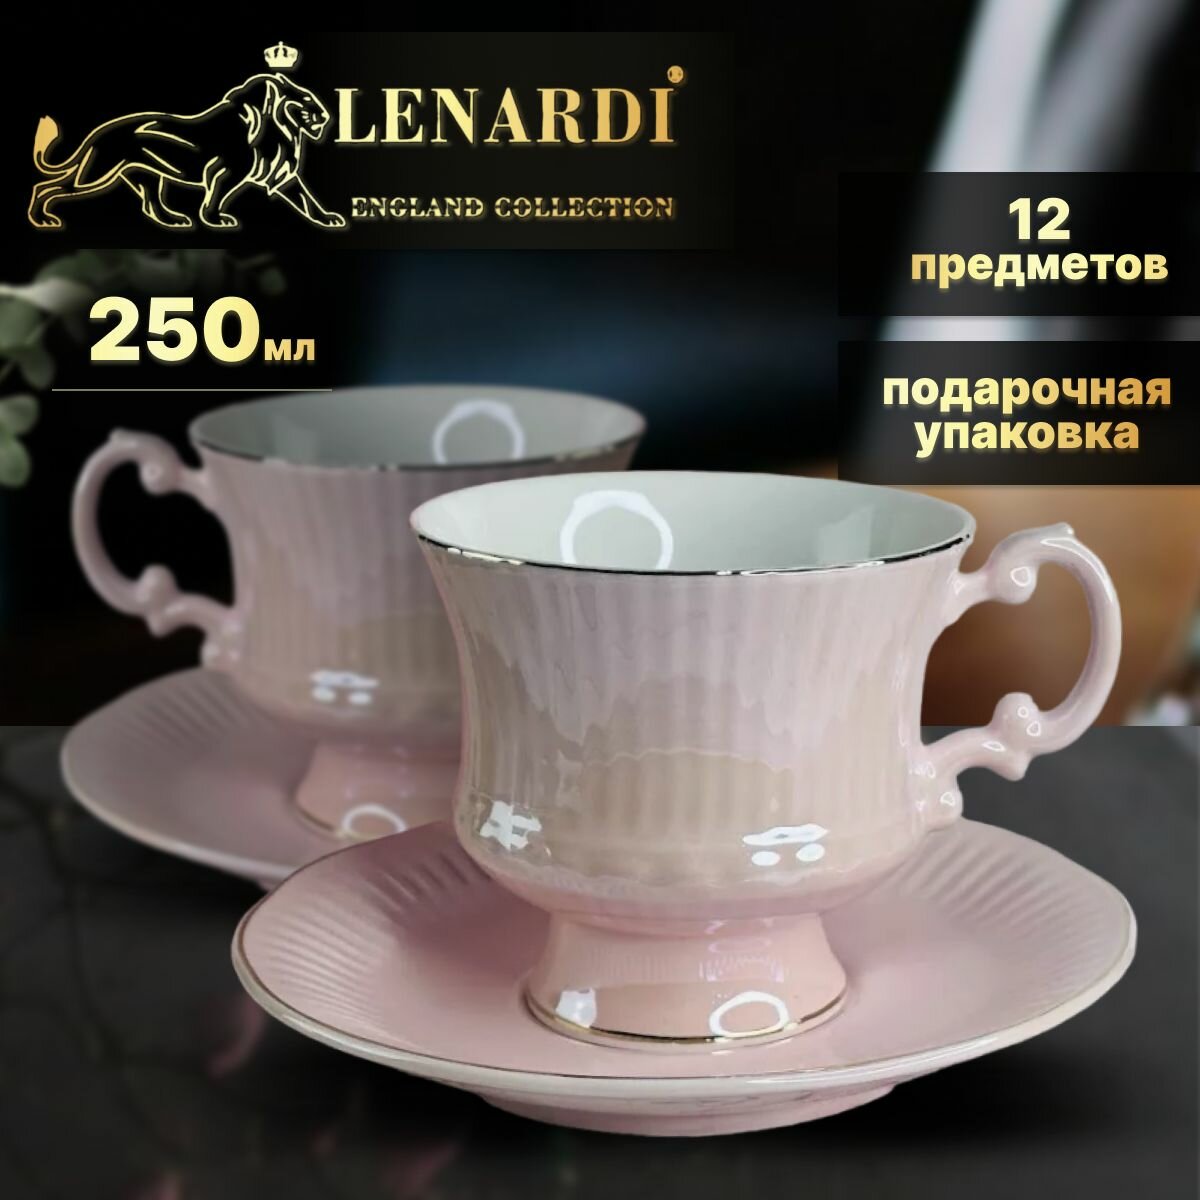 Чайный набор 250 мл. Коллекция "Евдокия", розовый. 12 предметов. Lenardi. Подарочная упаковка. Фарфор.